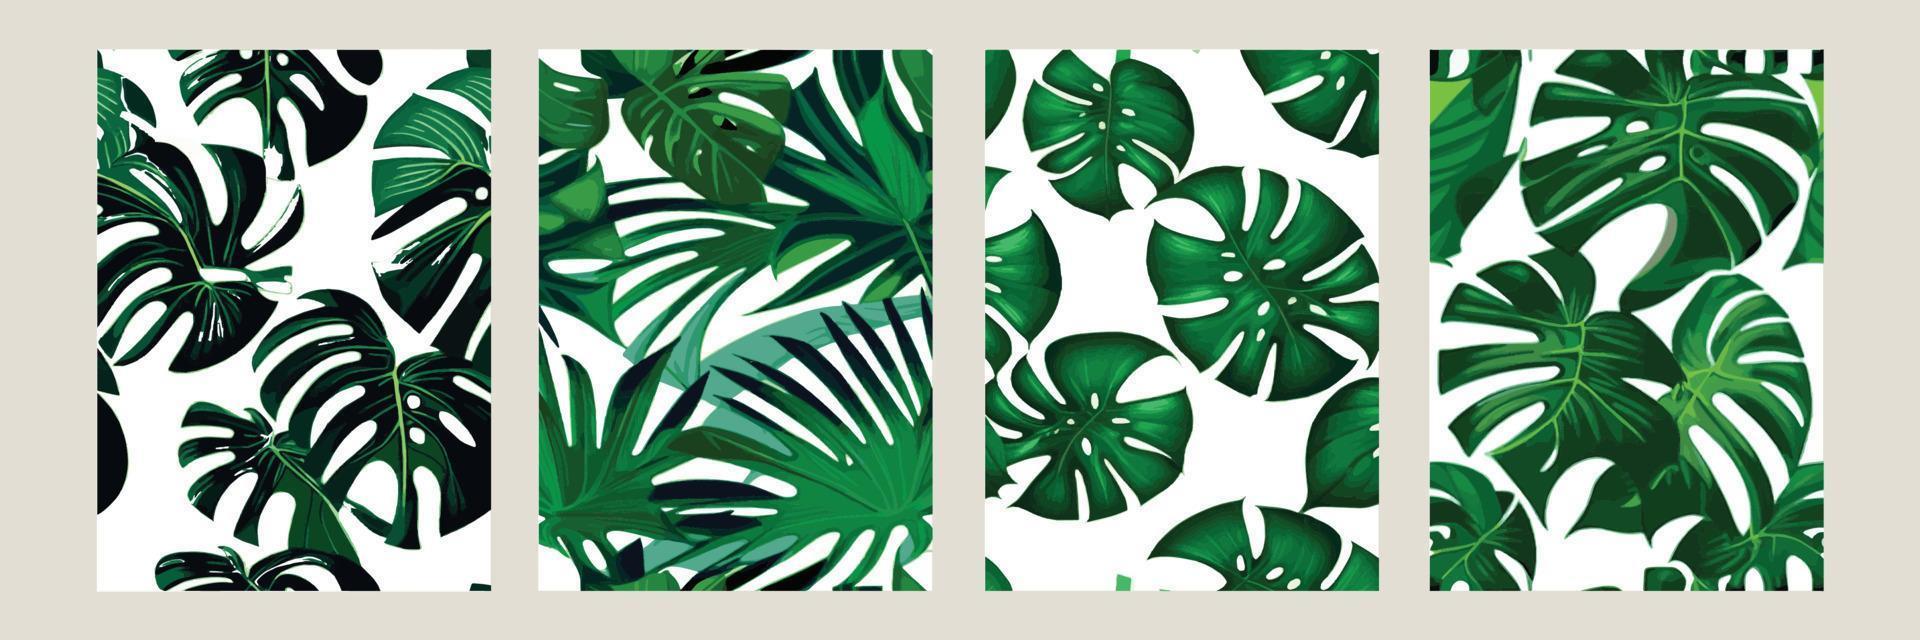 grön monstera som en mönster på en vit bakgrund. exotisk mönster med tropisk löv. vektor illustration. uppsättning av fyrkant posters